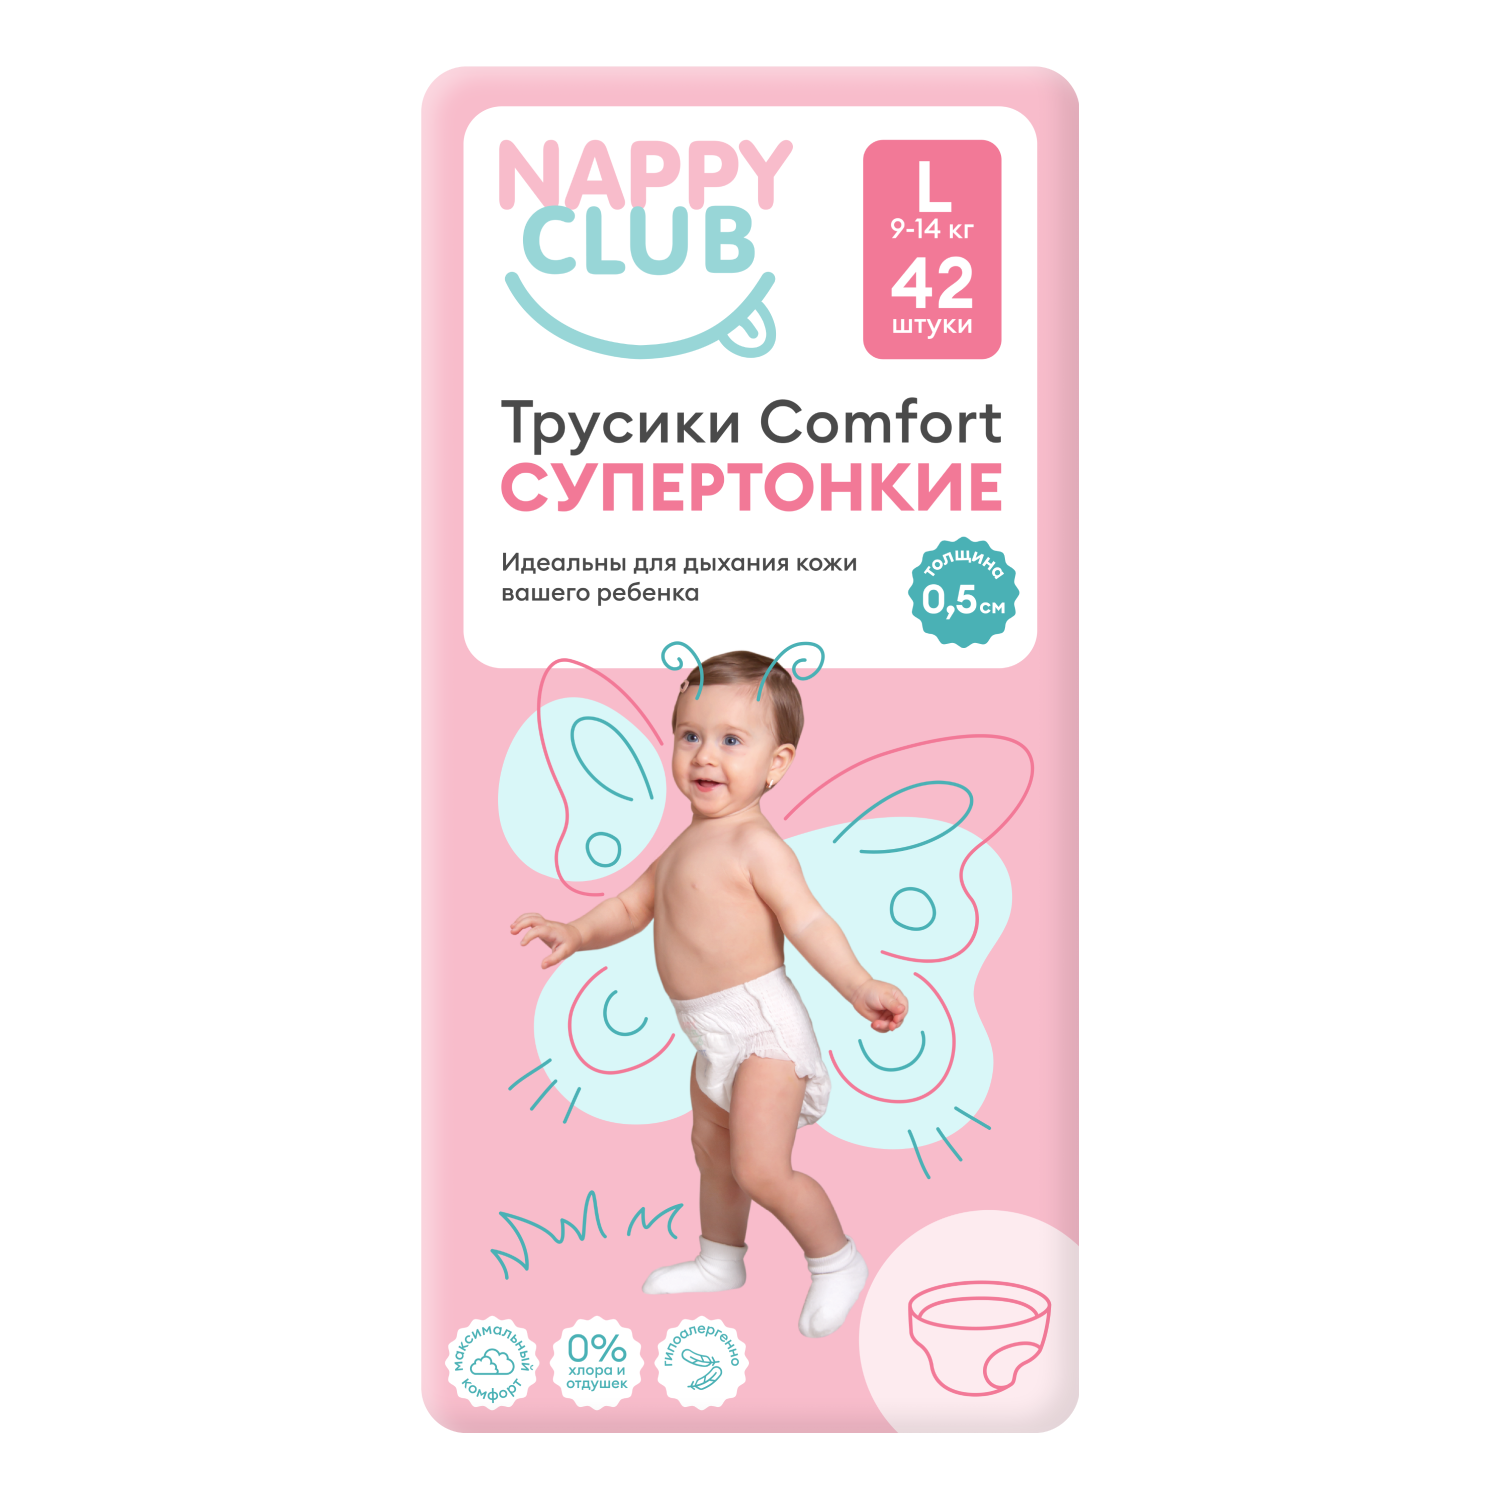 NappyClub трусики Comfort дневные супер-тонкие L (9-14 кг) 42 шт. nappyclub трусики premium дневные супер тонкие m 6 11 кг 54 шт